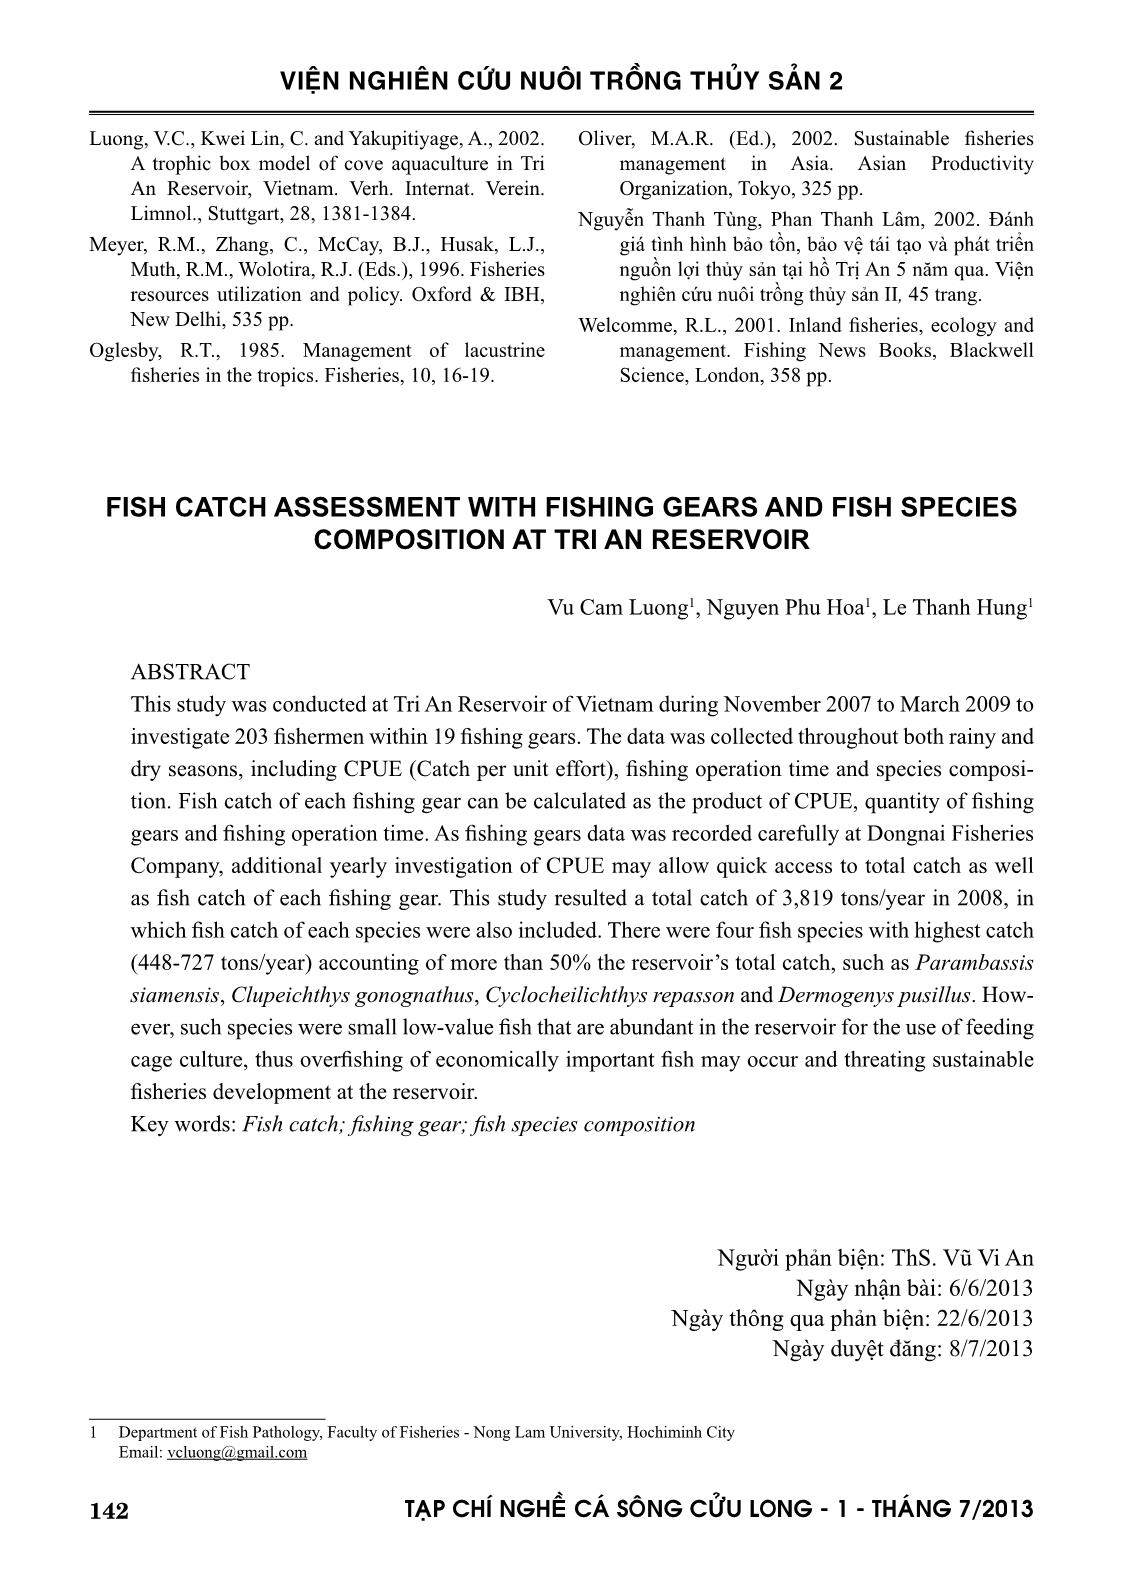 Đánh giá sản lượng thủy sản khai thác qua khảo sát ngư cụ và thành phần loài cá khai thác ở hồ Trị An trang 10